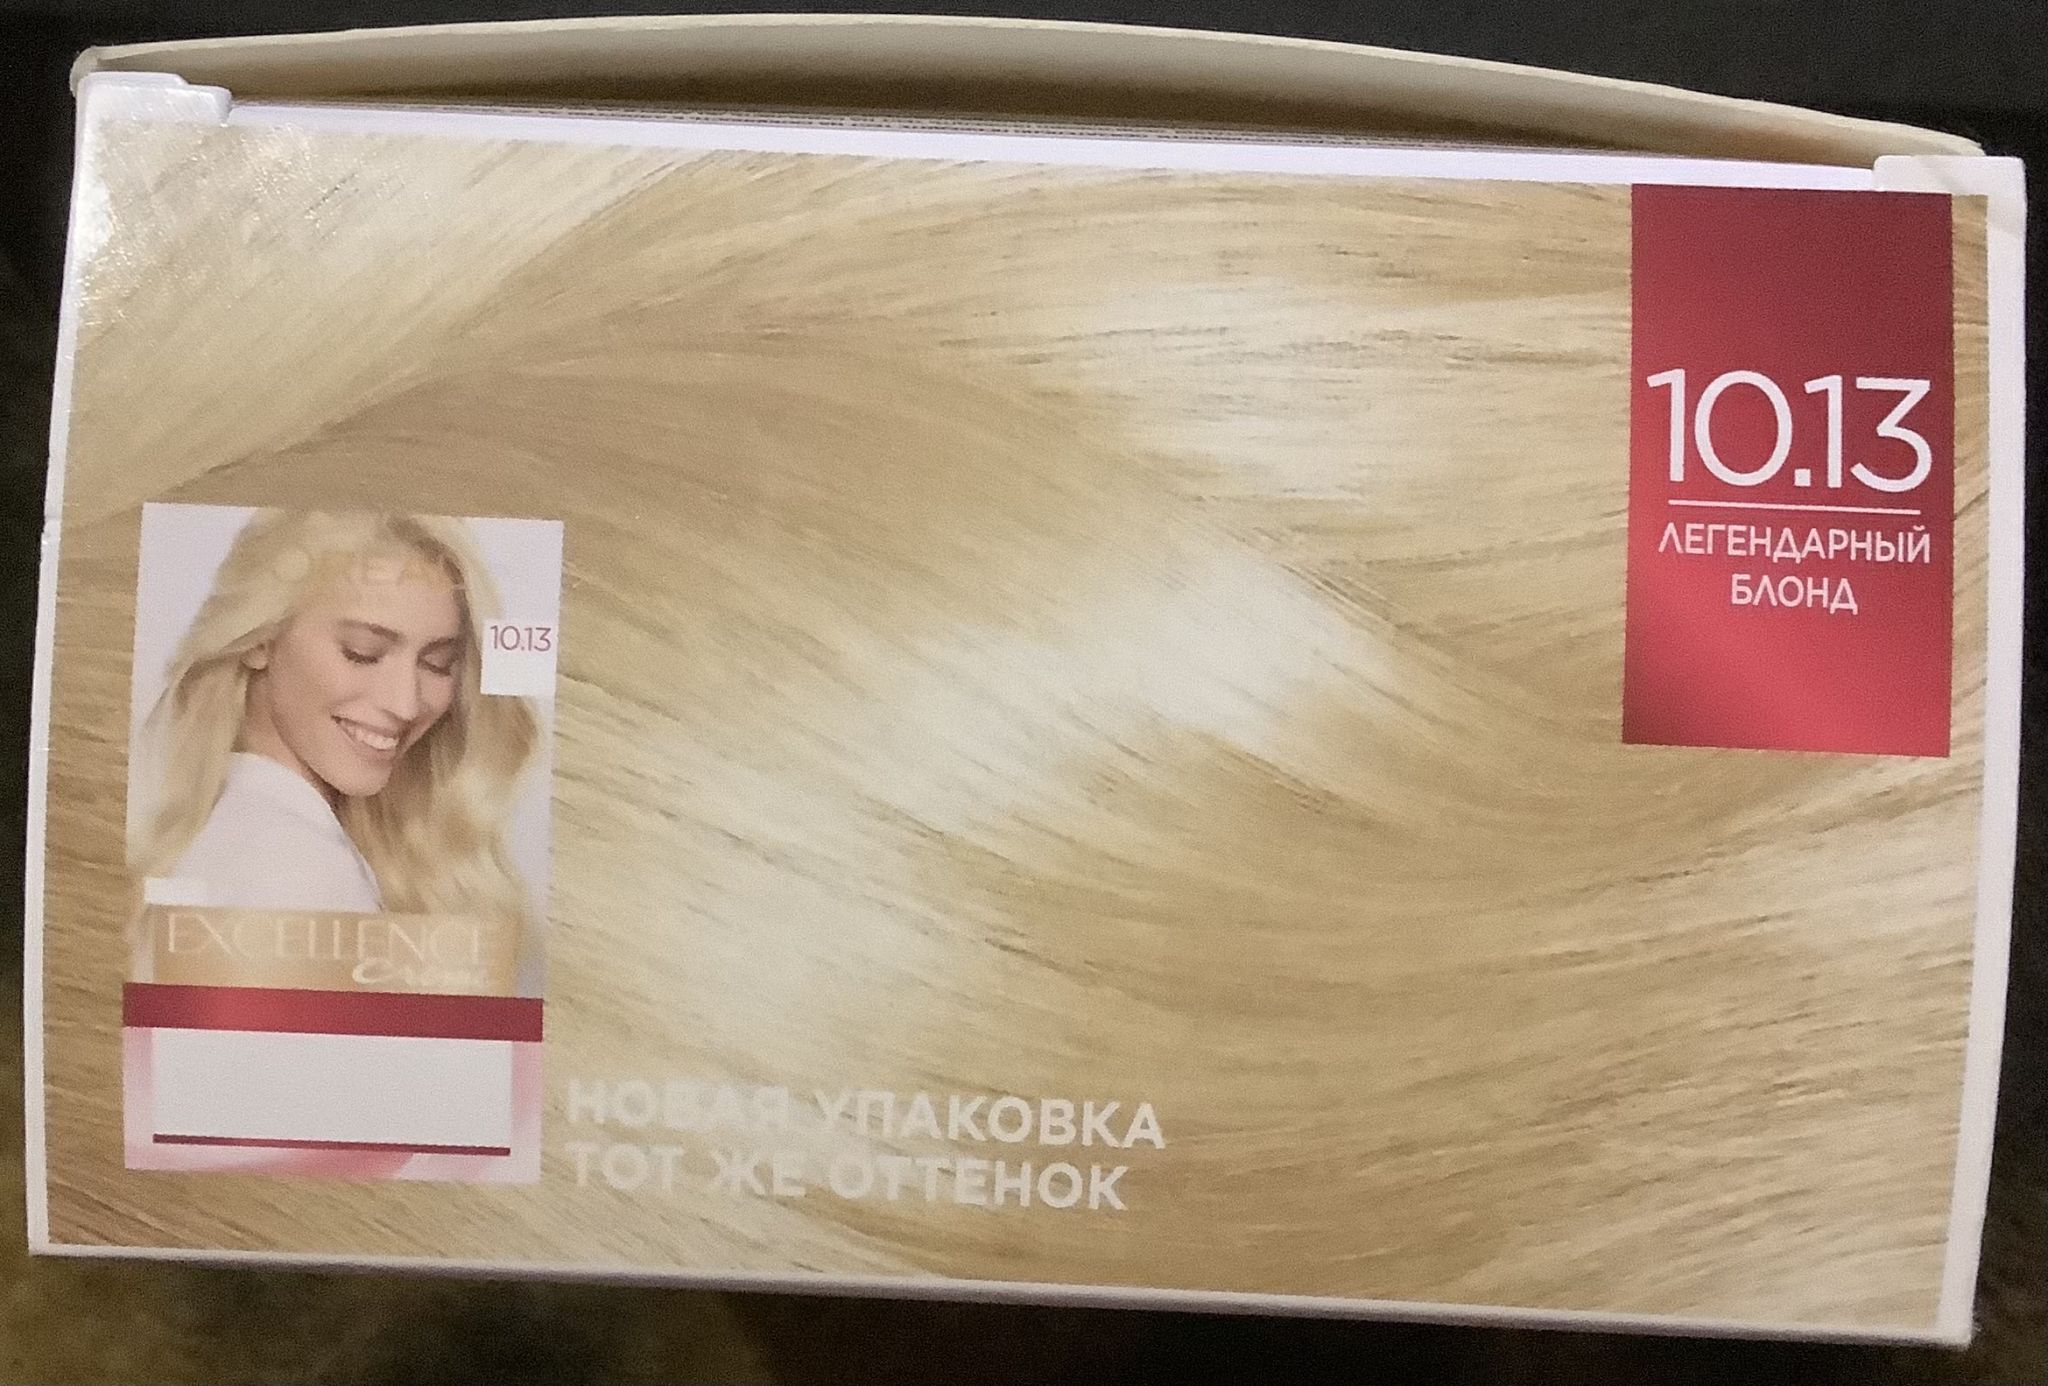 L'oreal paris краска для волос excellence оттенок 10 13 легендарный блонд